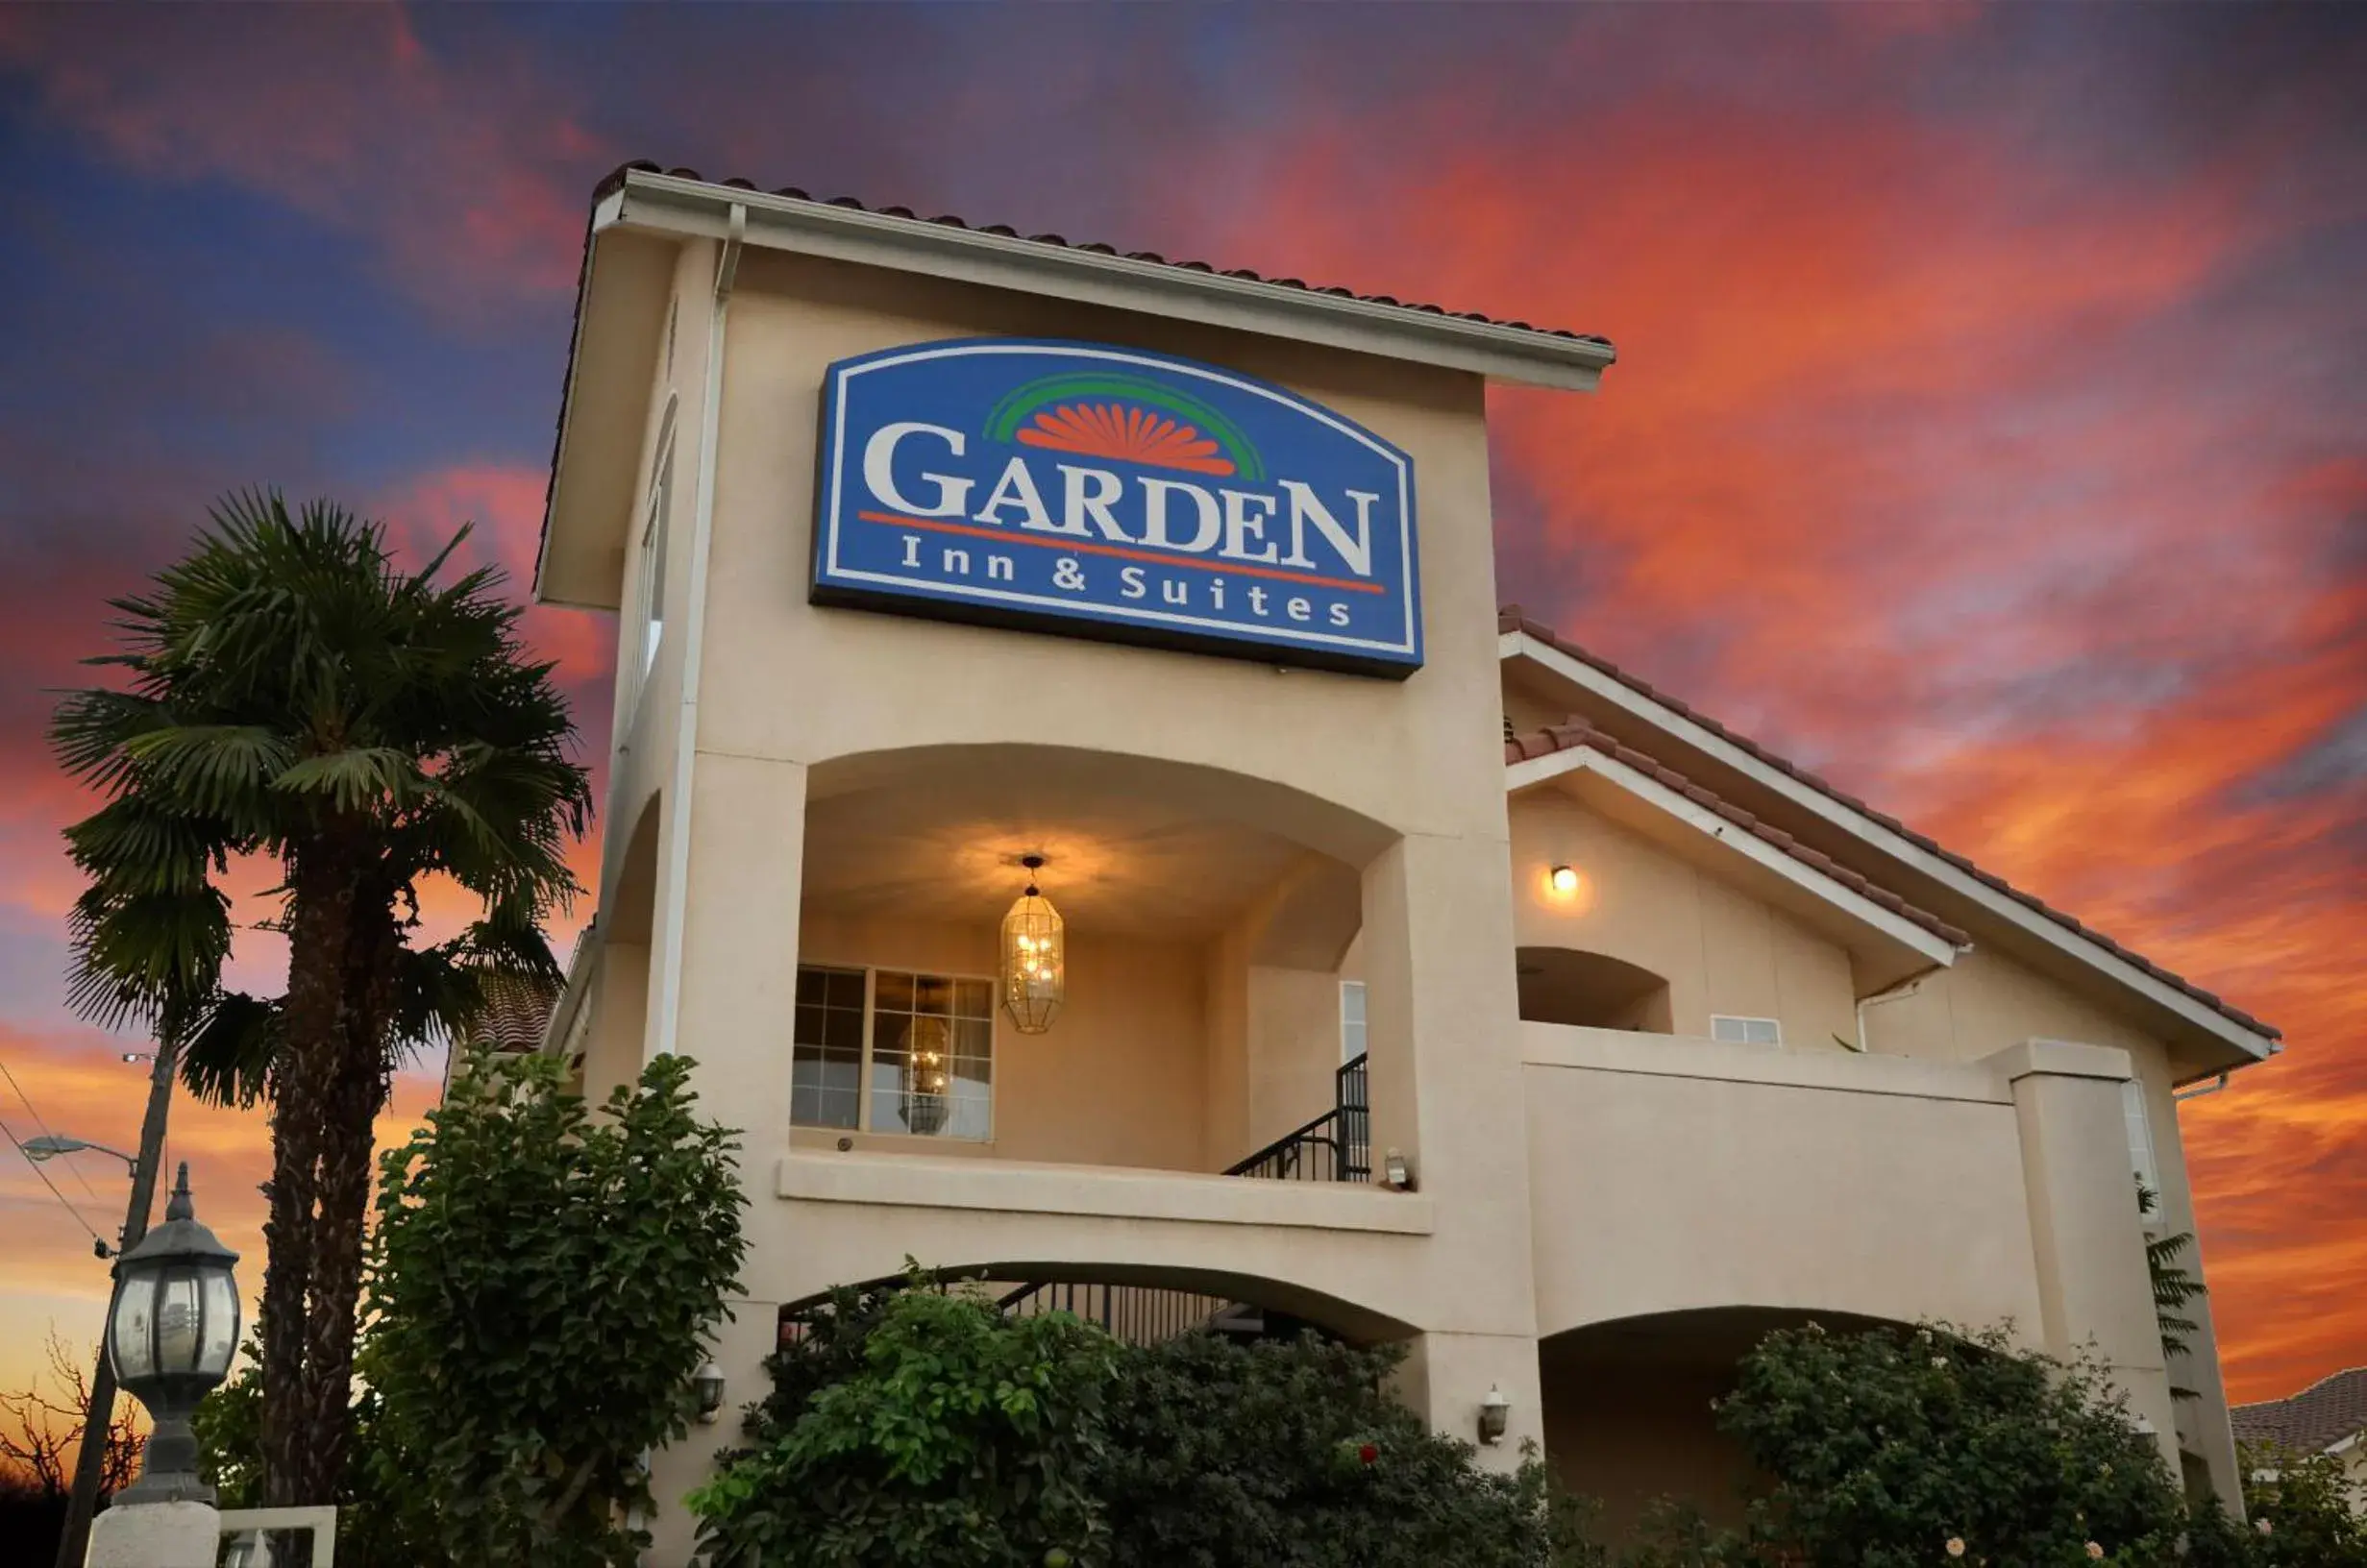 Property building, Facade/Entrance in Garden Inn and Suites Fresno